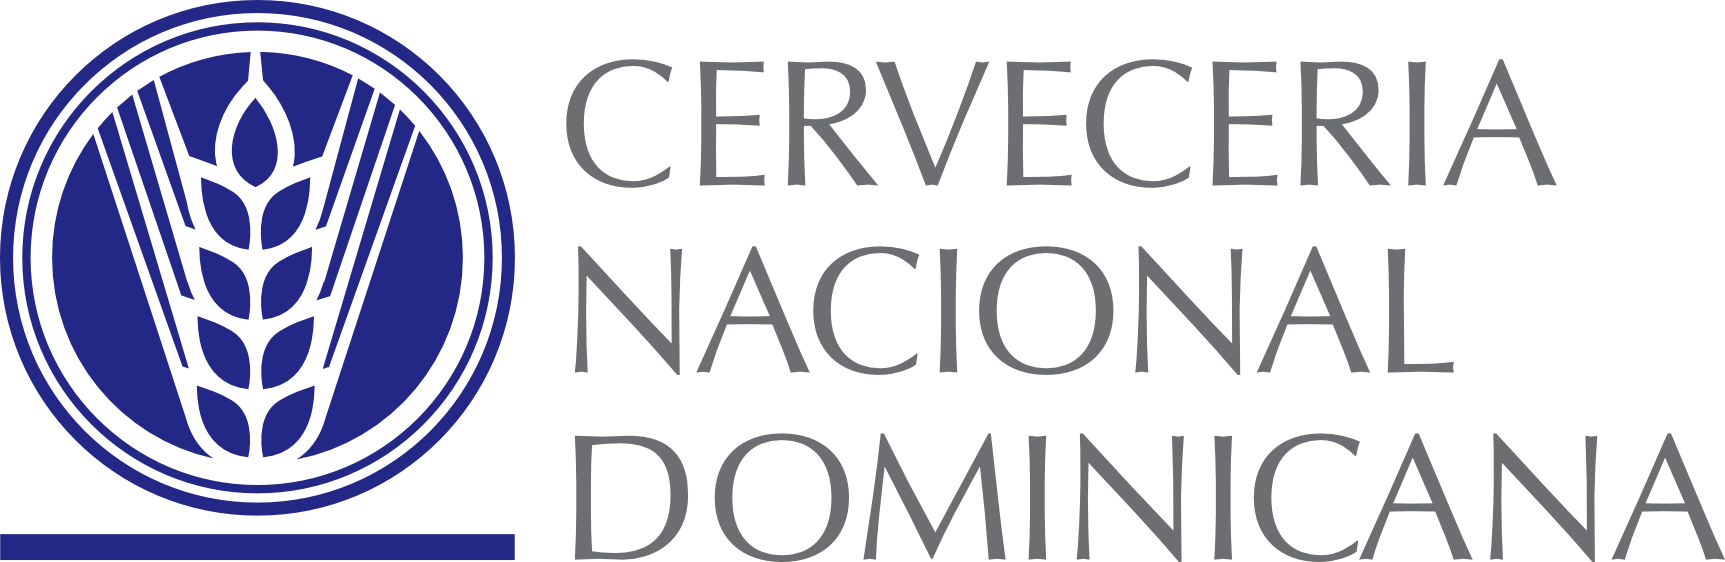 Cervecería Nacional Dominicana logo